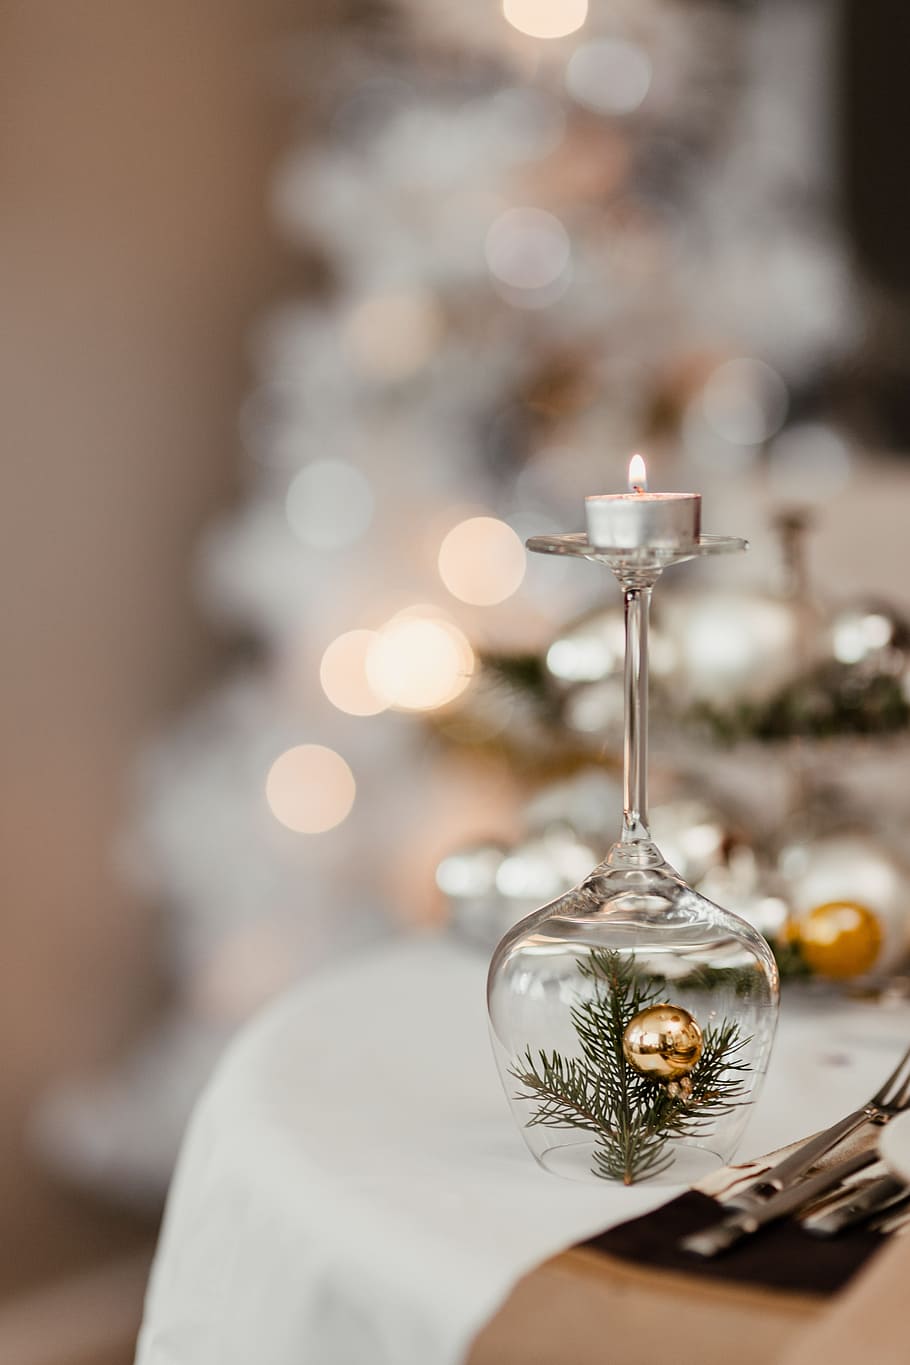 plata decoraciones de navidad, navidad, plata, decoraciones, nochebuena, comedor, en el interior, celebración, decoración, enfoque en primer plano